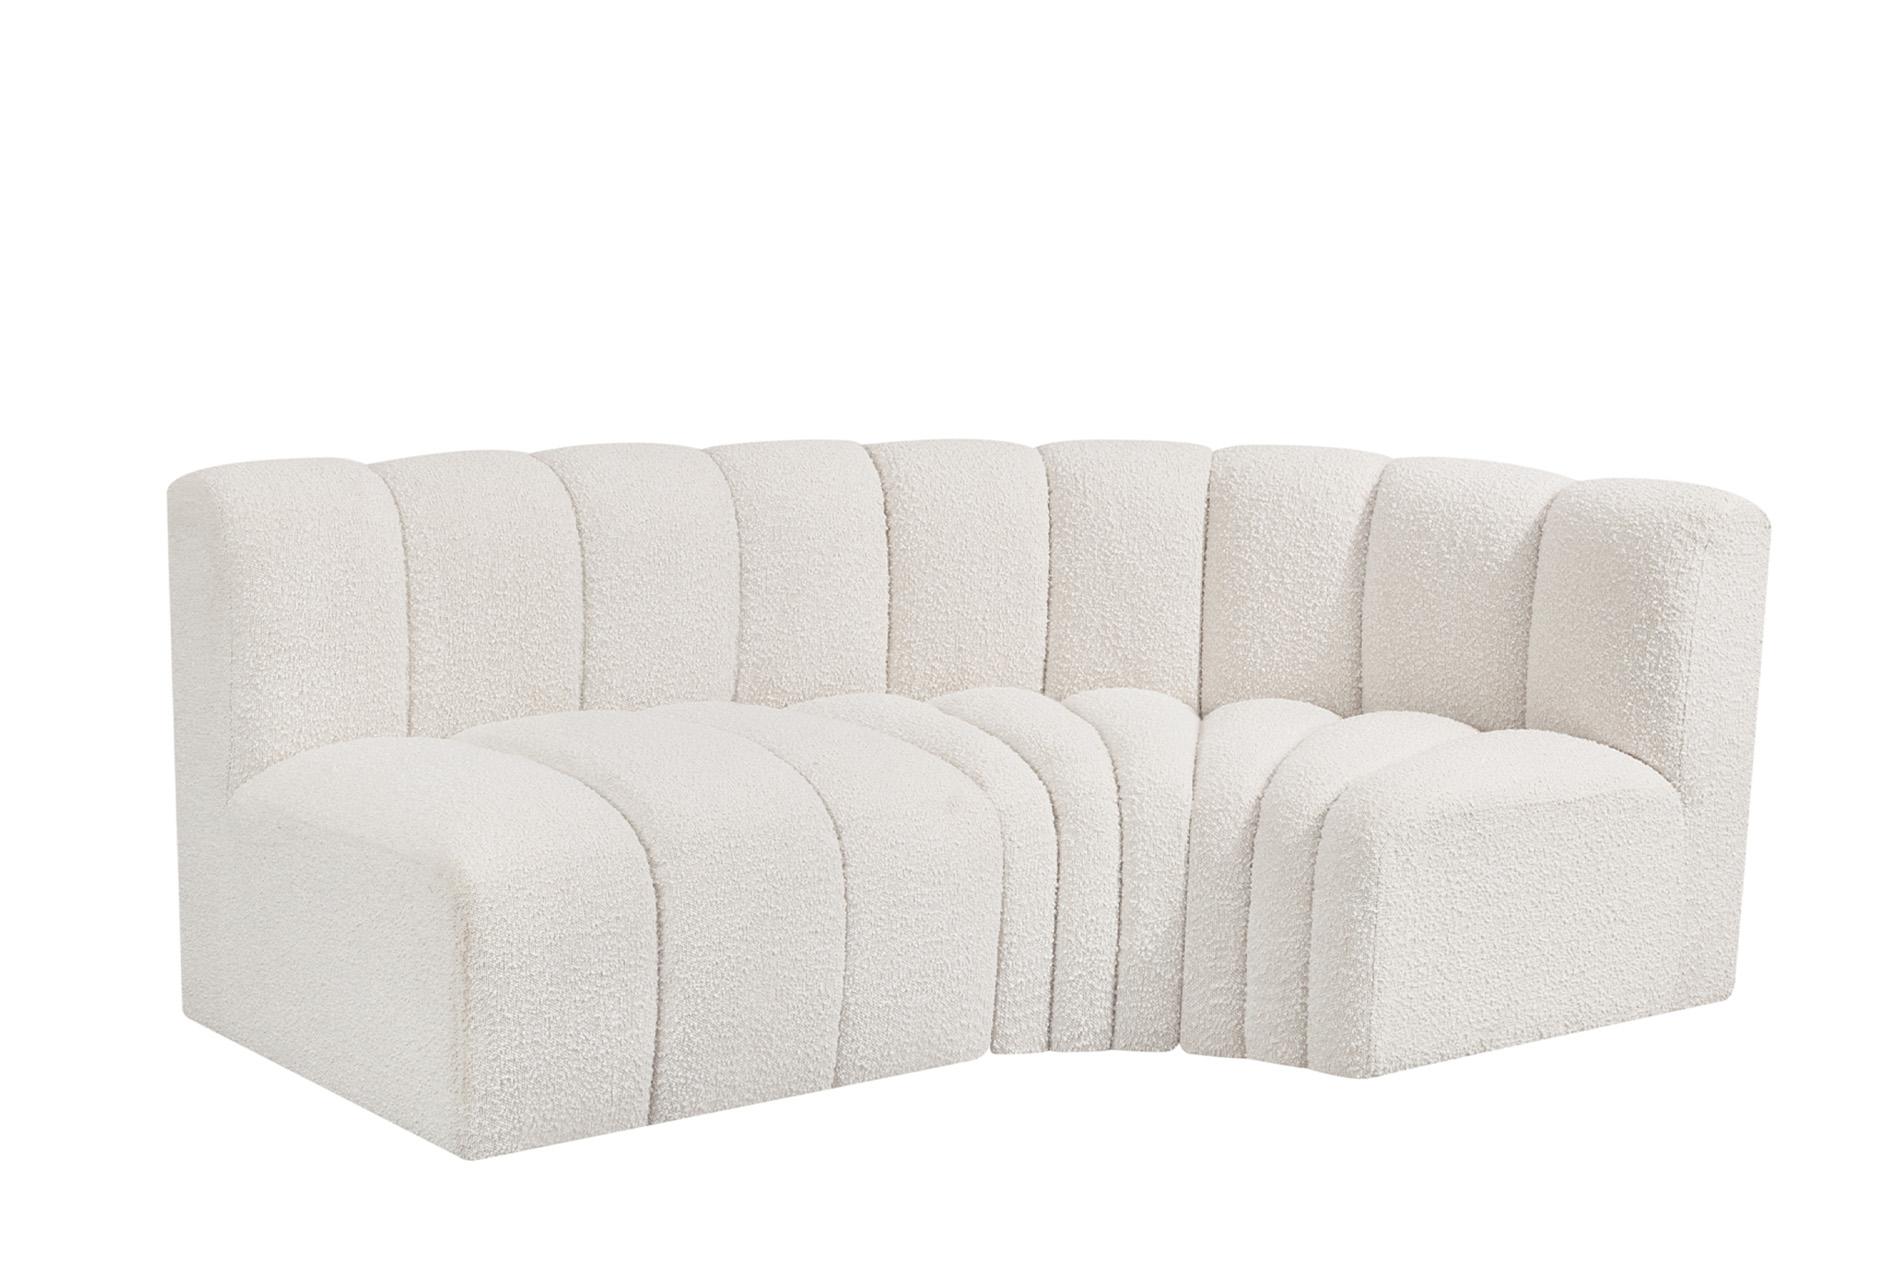 Contemporary, Modern Modular Sectional Sofa ARC 102Cream-S3A 102Cream-S3A in Cream 